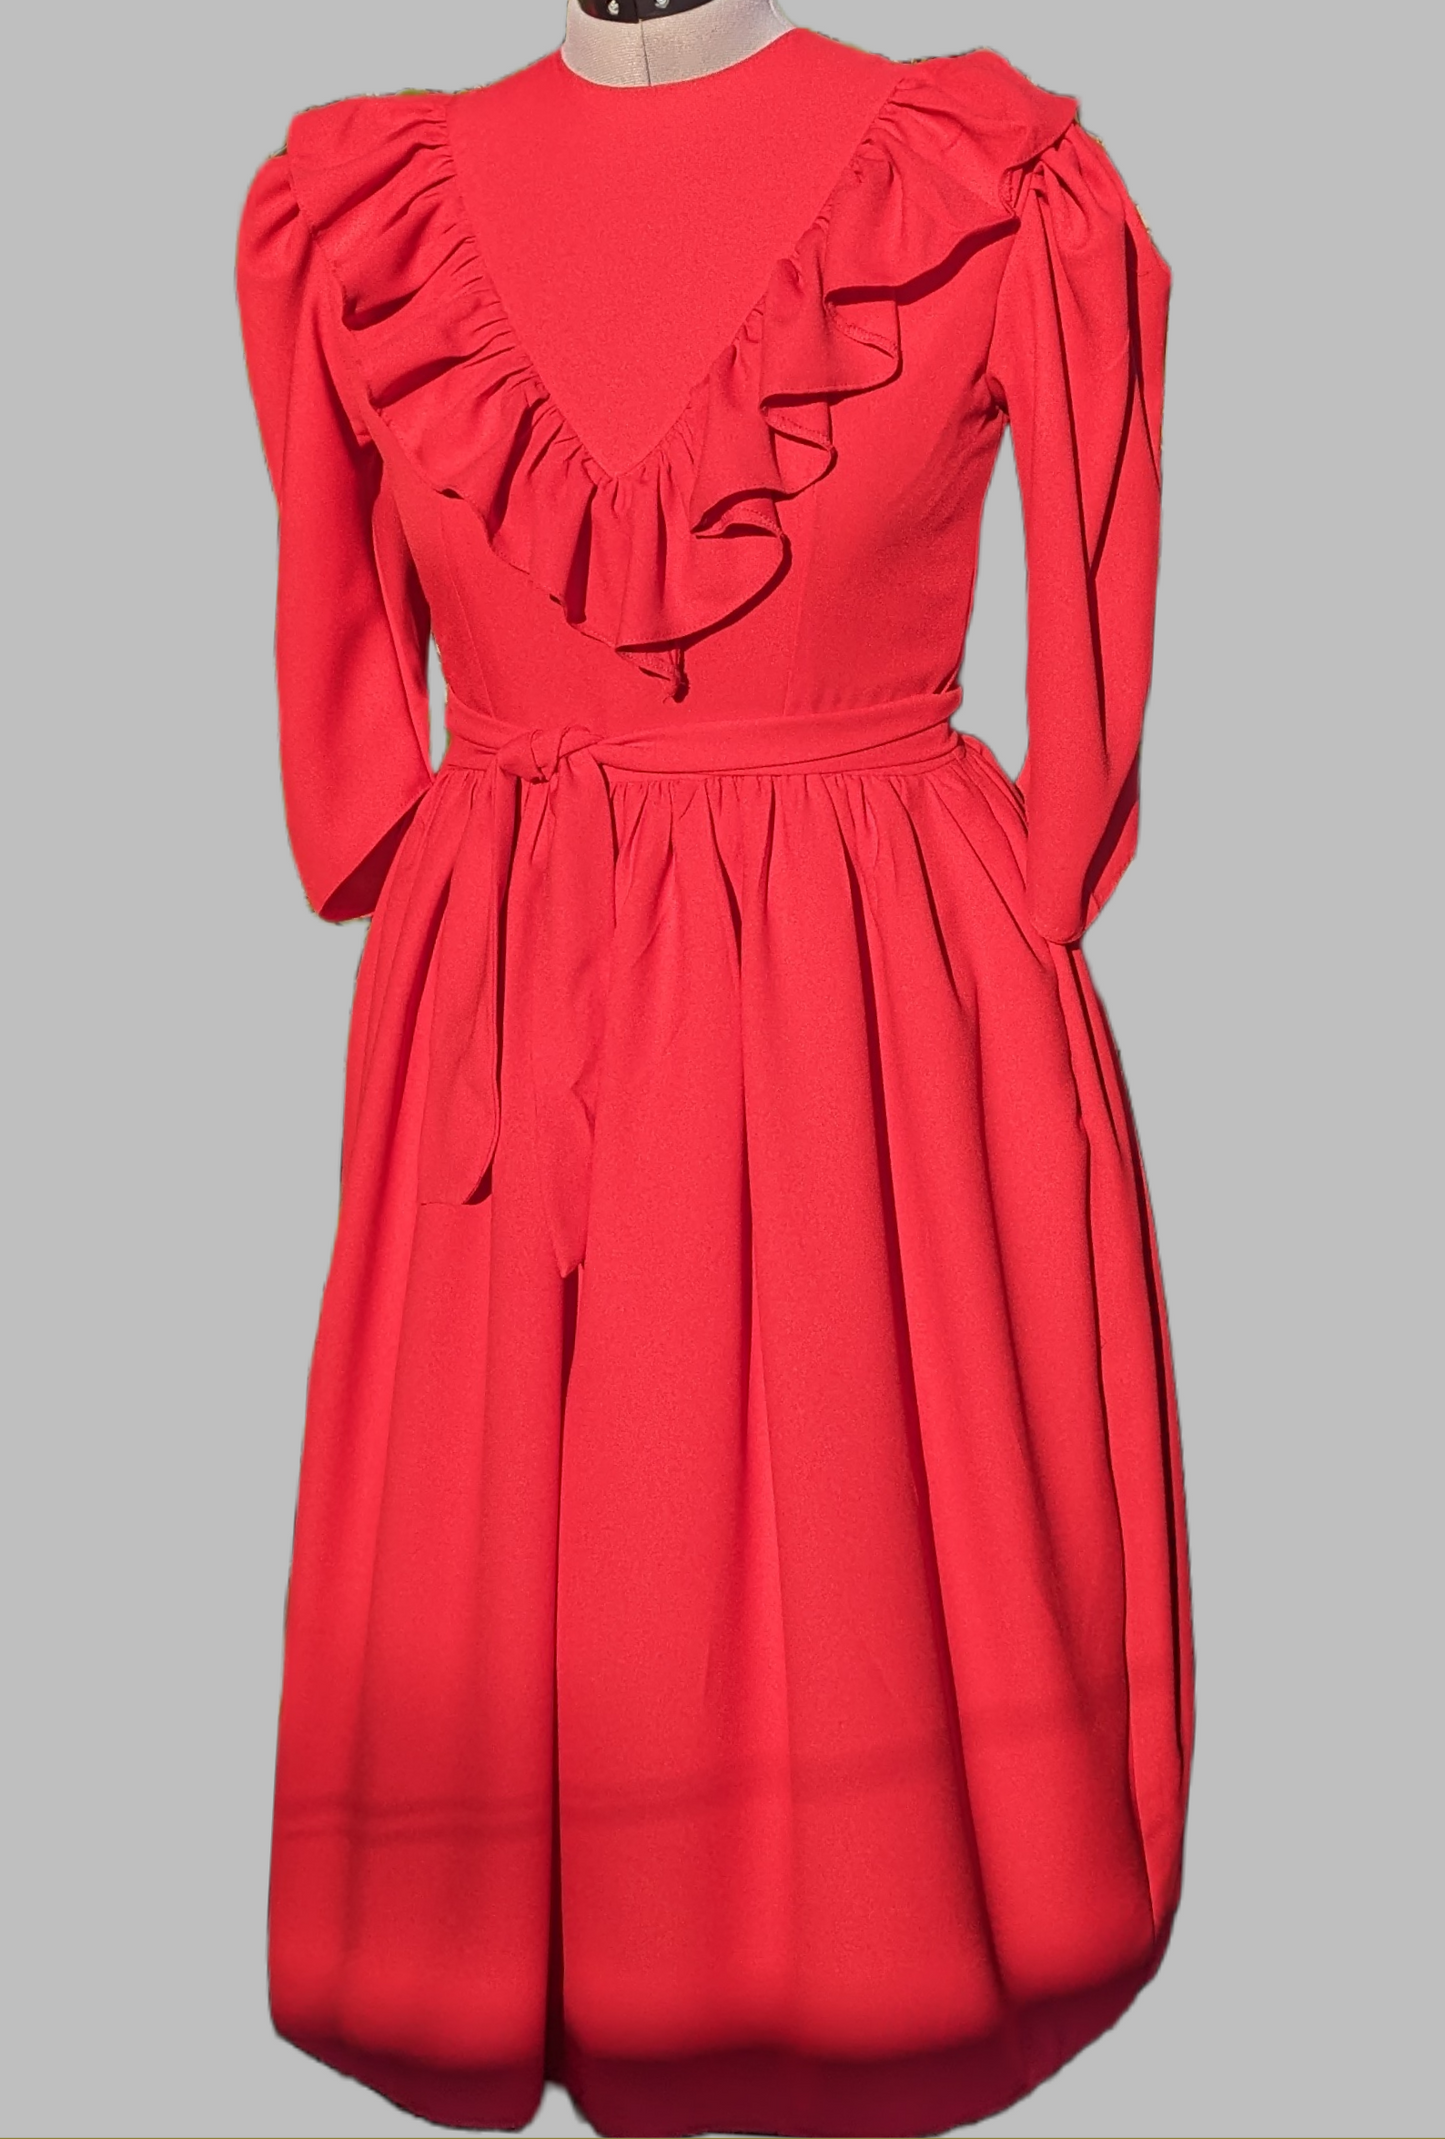 Roseline, Red Crêpe Vintage Dress